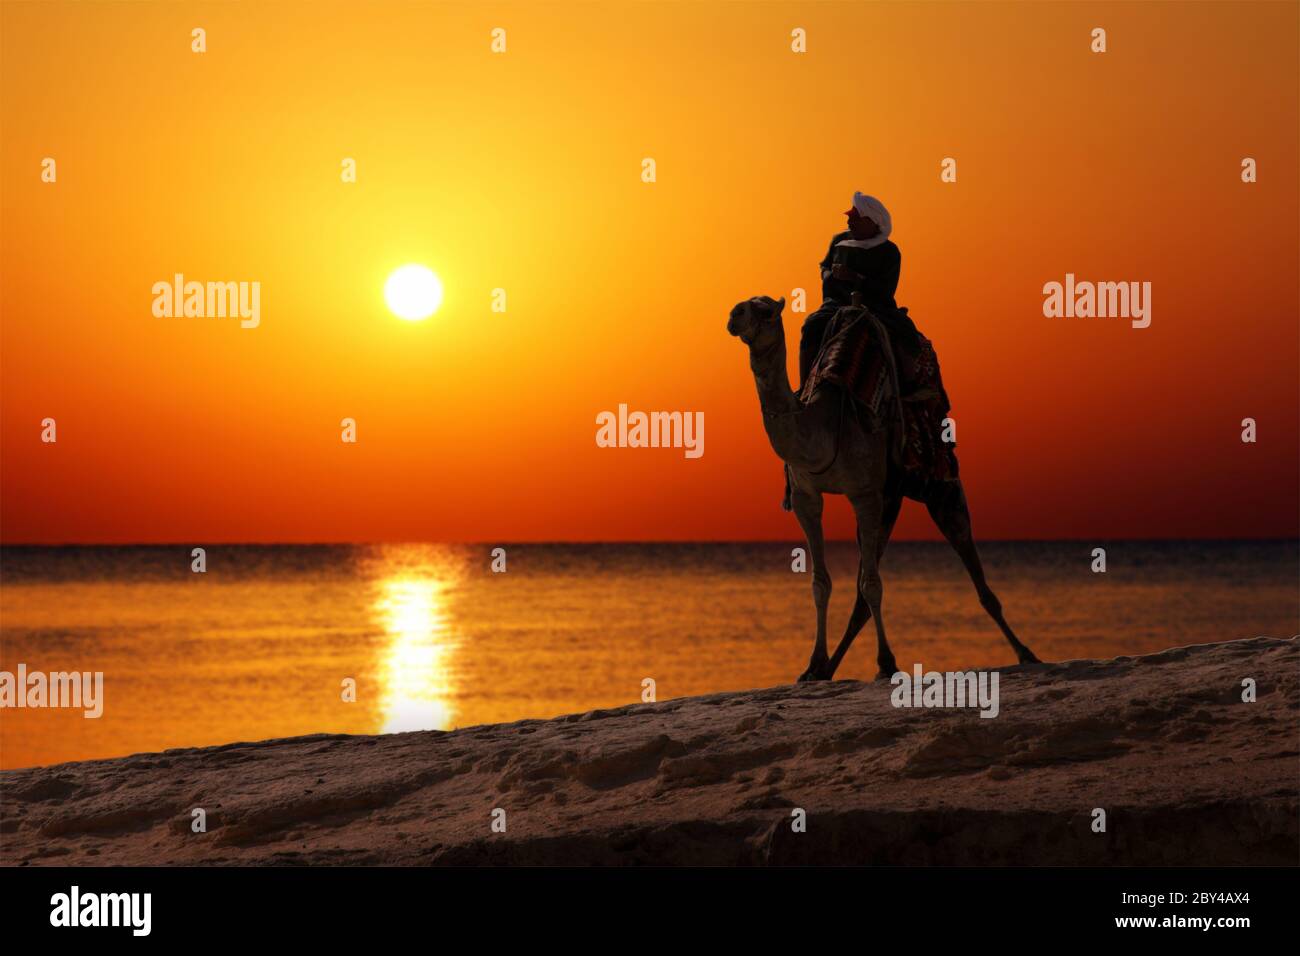 bédouin sur une silhouette de chameau contre le lever du soleil Banque D'Images